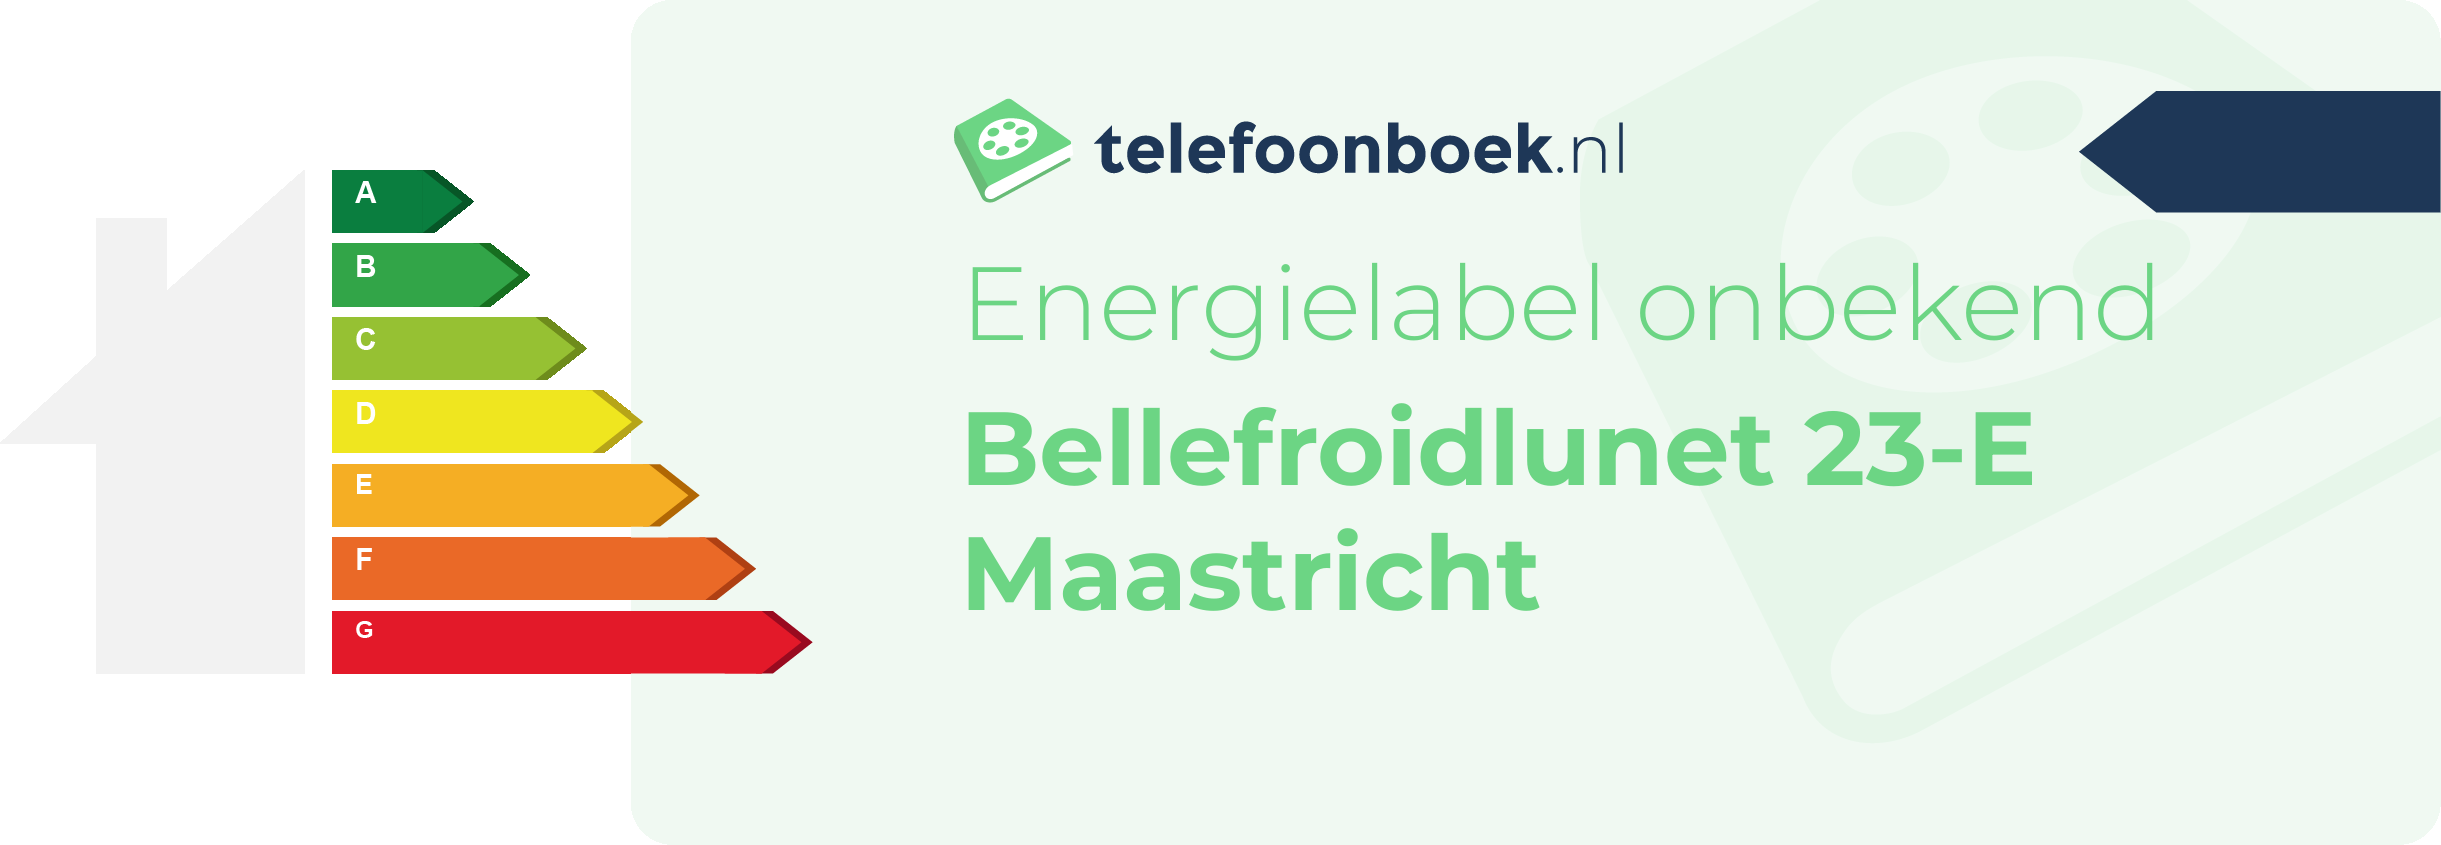 Energielabel Bellefroidlunet 23-E Maastricht